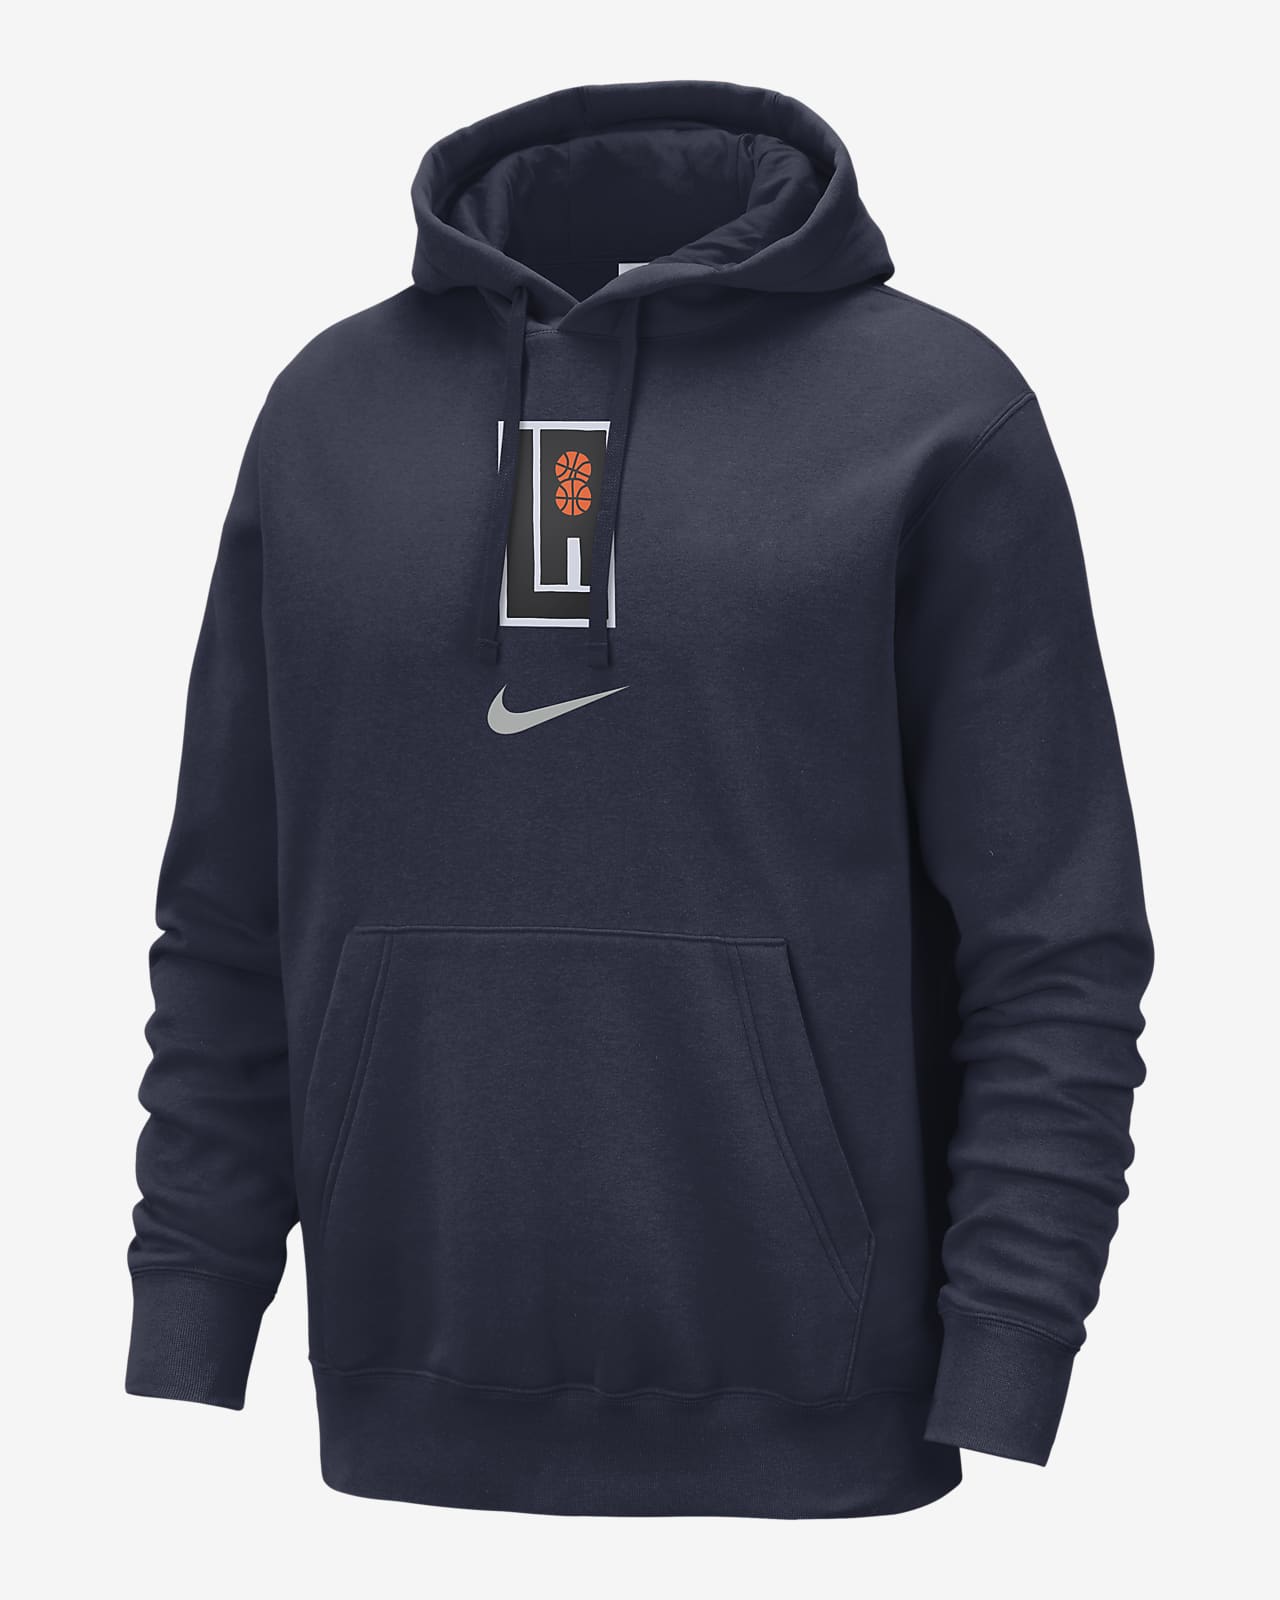 Felpa pullover con cappuccio LA Clippers Club Fleece City Edition Nike NBA – Uomo